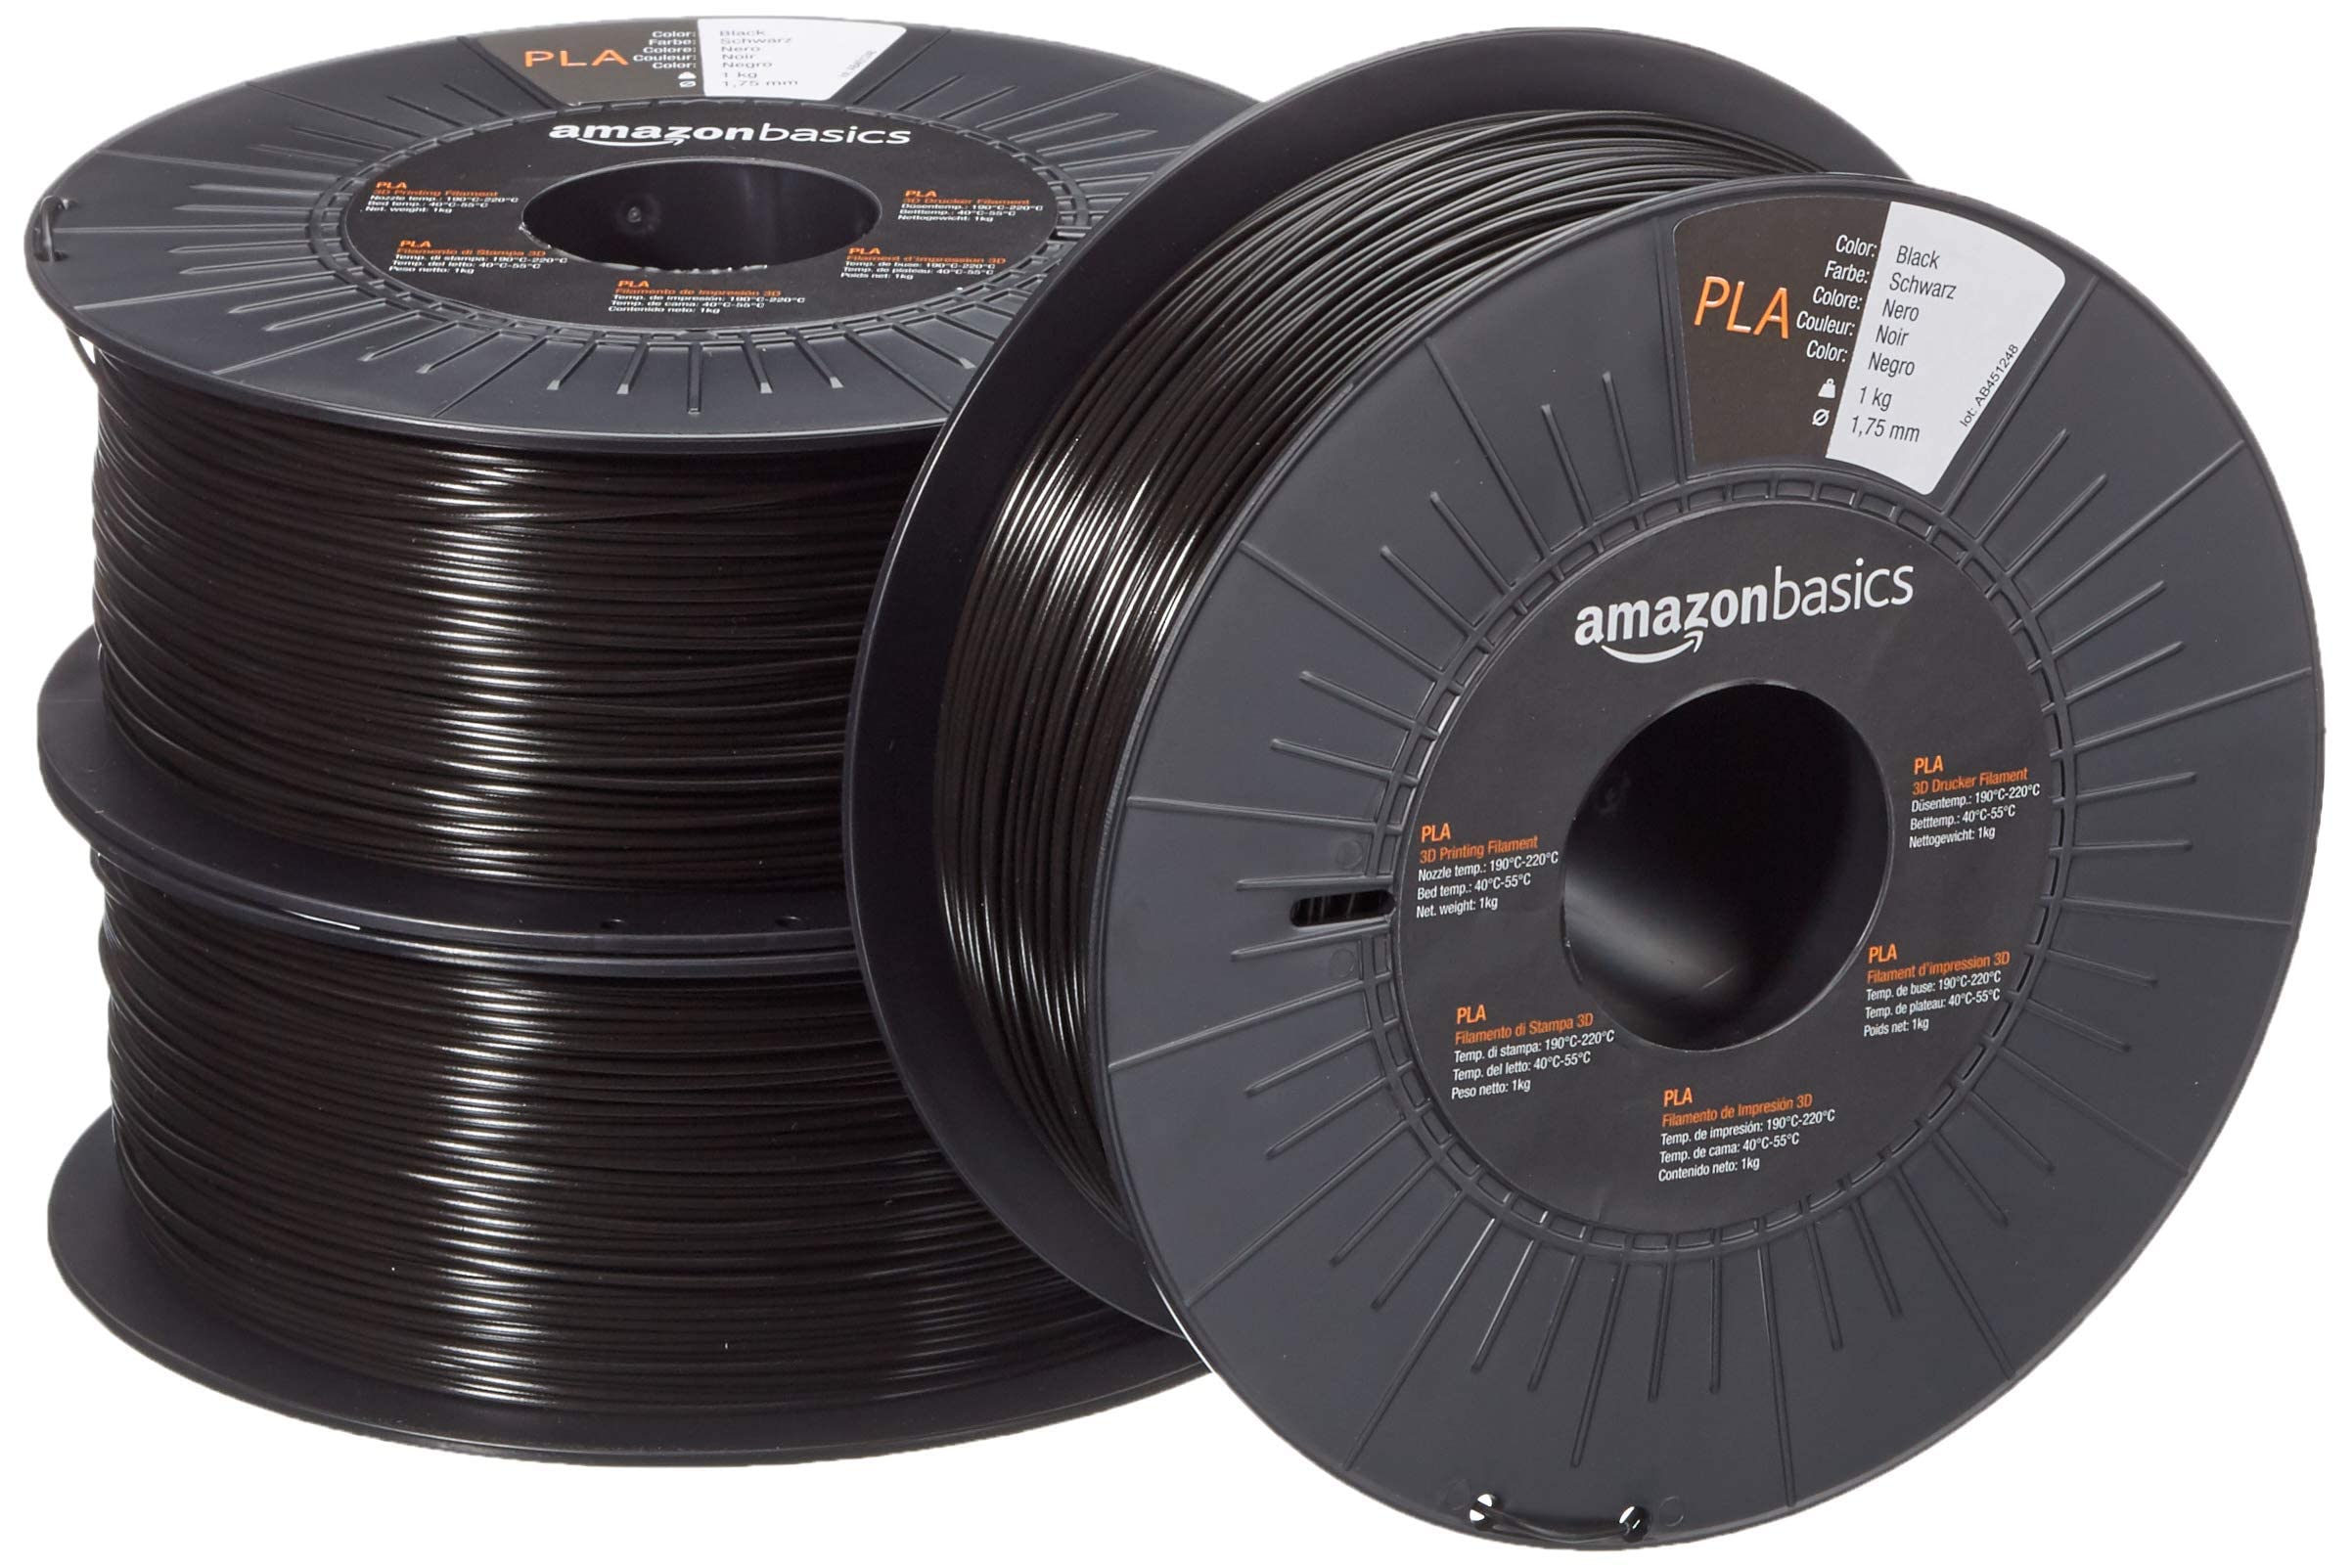 3 spools Amazon Basics Black PLA 3D Printer Filament, 1.75mm, Black, 1 kg per Spool $26.58